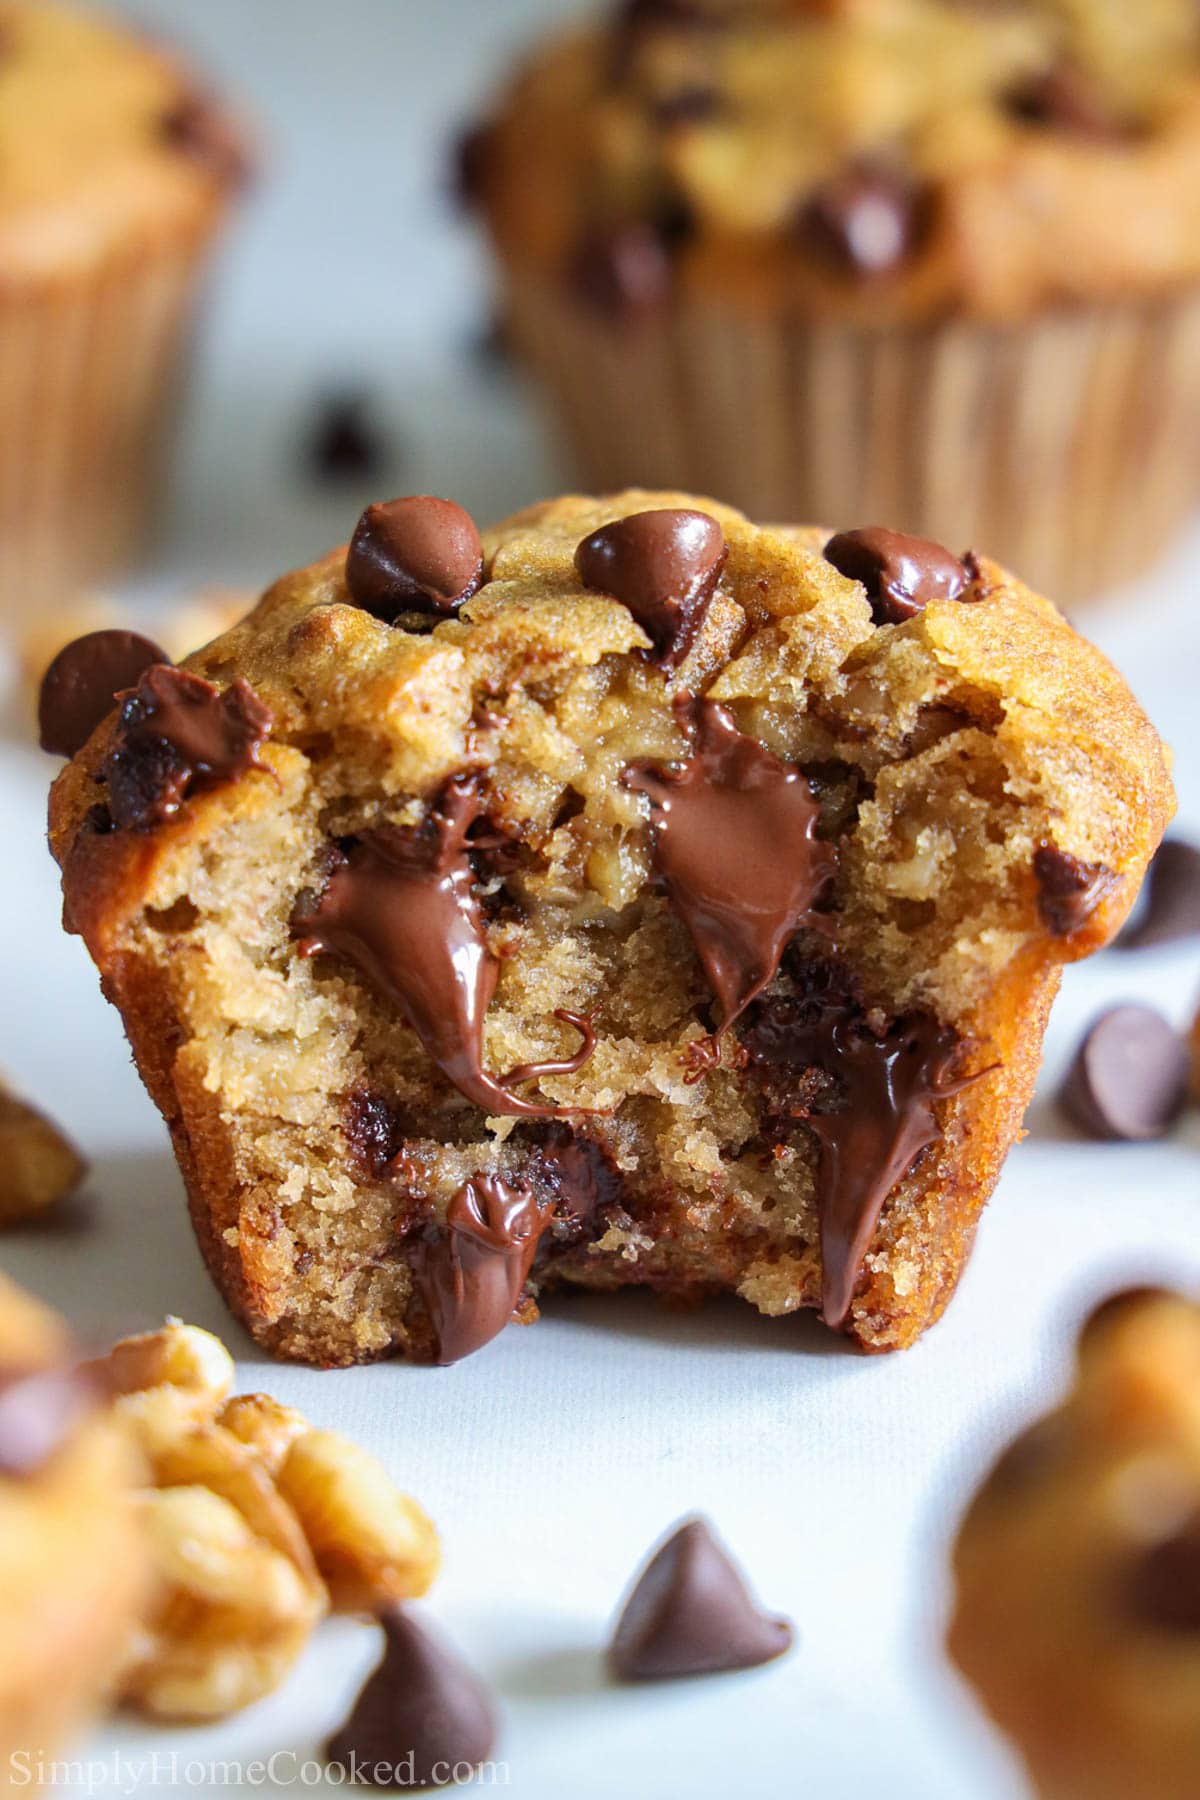 Ako volite slatki doručak, onda će vas oduševiti ovi muffini sa čokoladom od banane. Otopljena čokolada i hrskavi orasi u muffinu od banane.